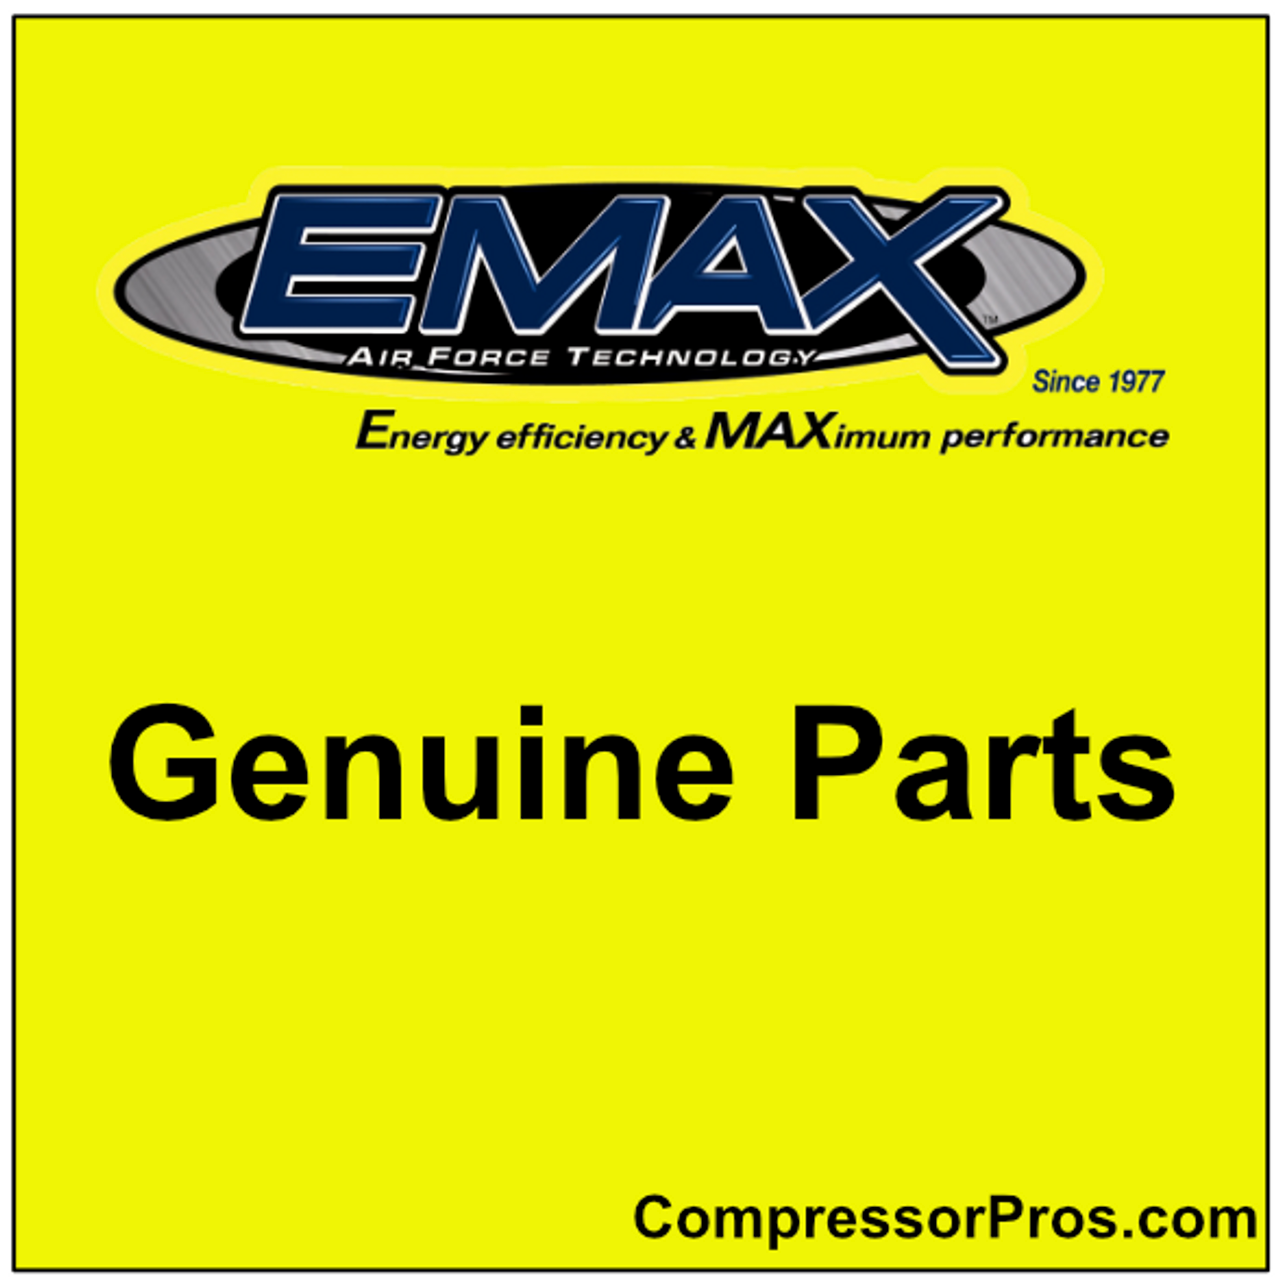 EMAX Safety Valve VALVE008 - 1/4" 200 psi